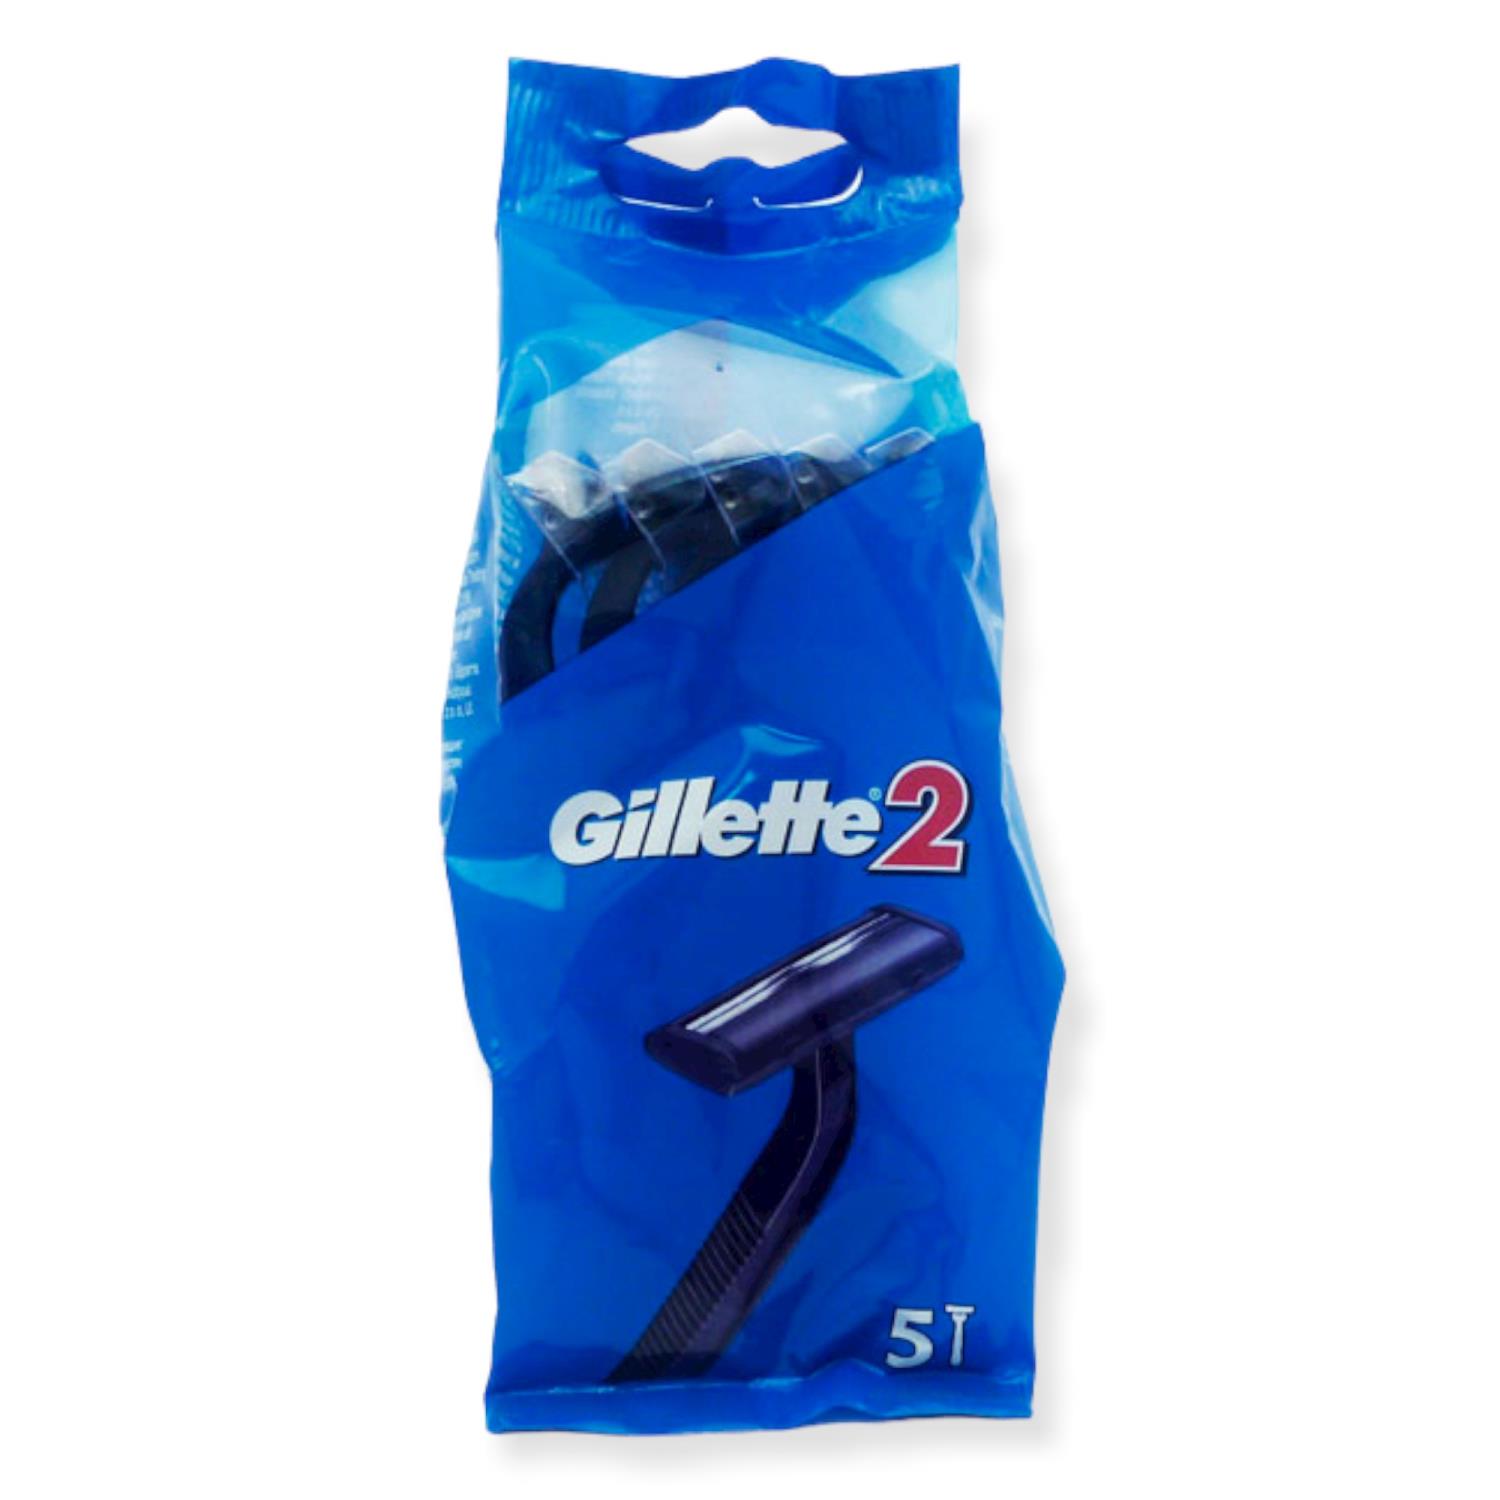 Gillette2 Razors 5pk